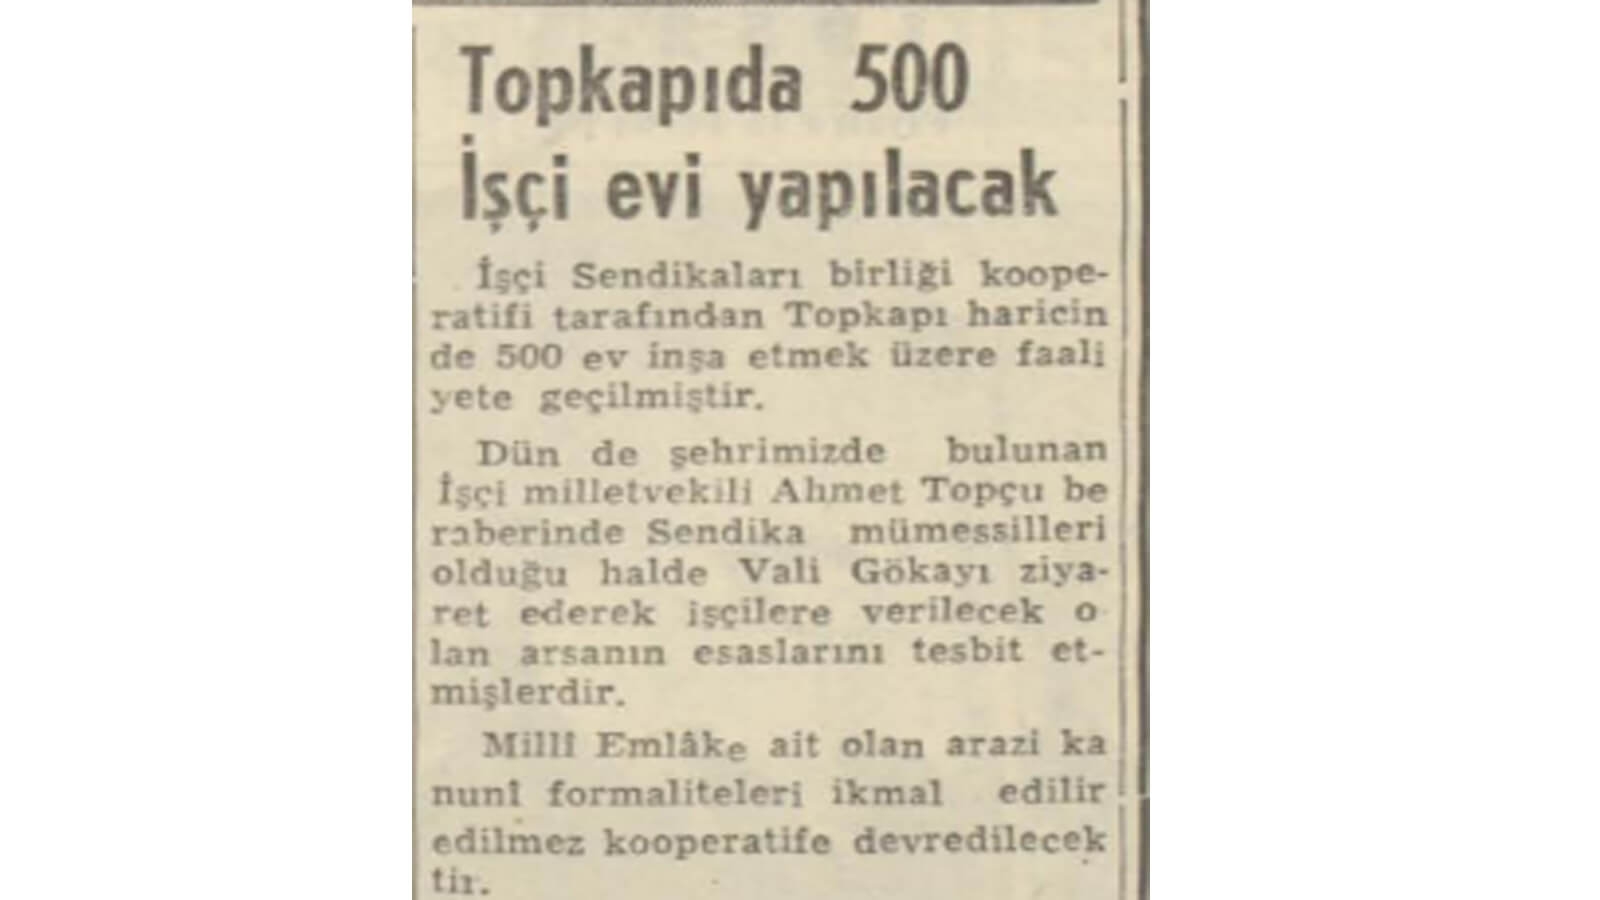 1952 Yılında Topkapı'ya 500 İşçi Evi Yapılacakmış!